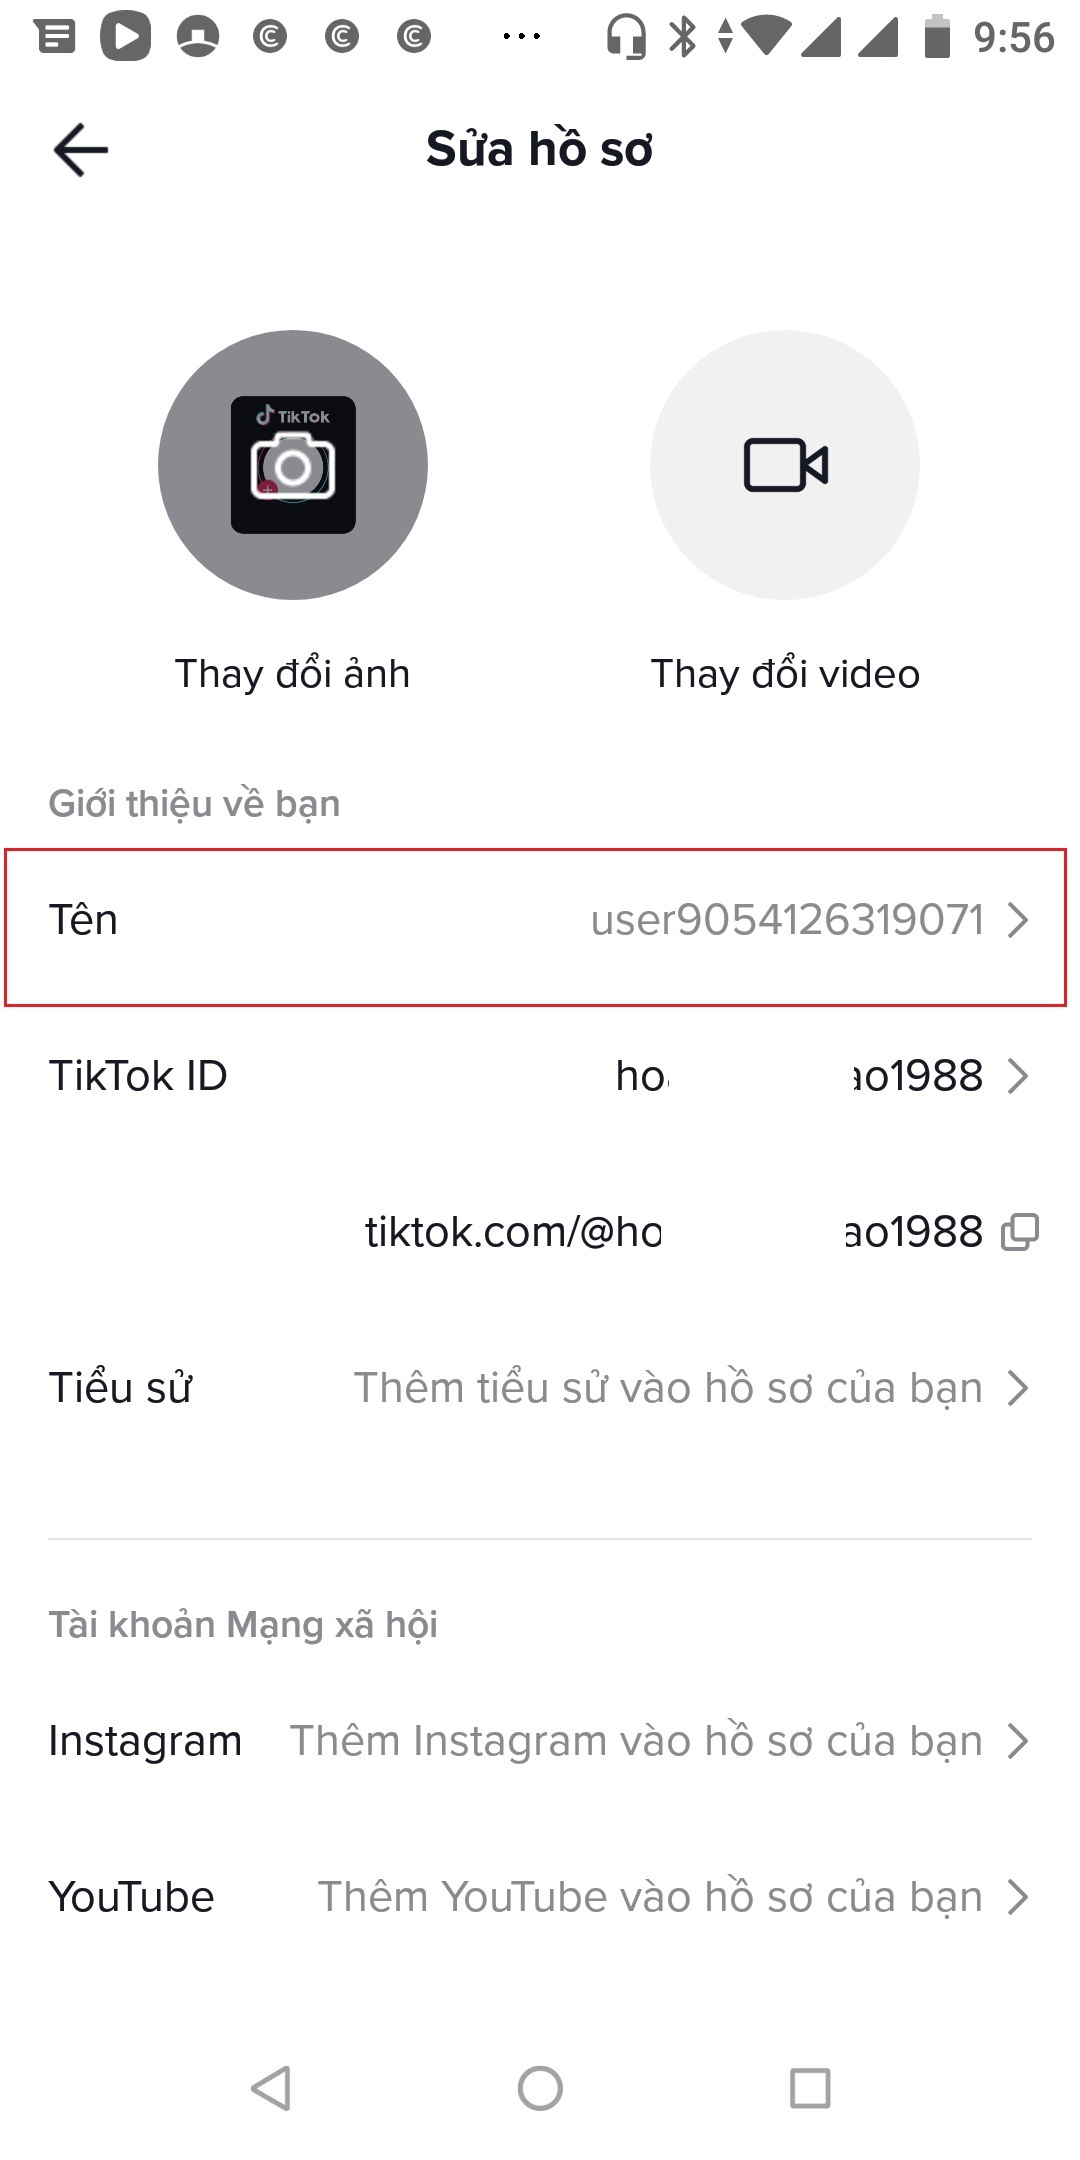 Hướng dẫn đổi tên TikTok thay tên mặc định 'user...'